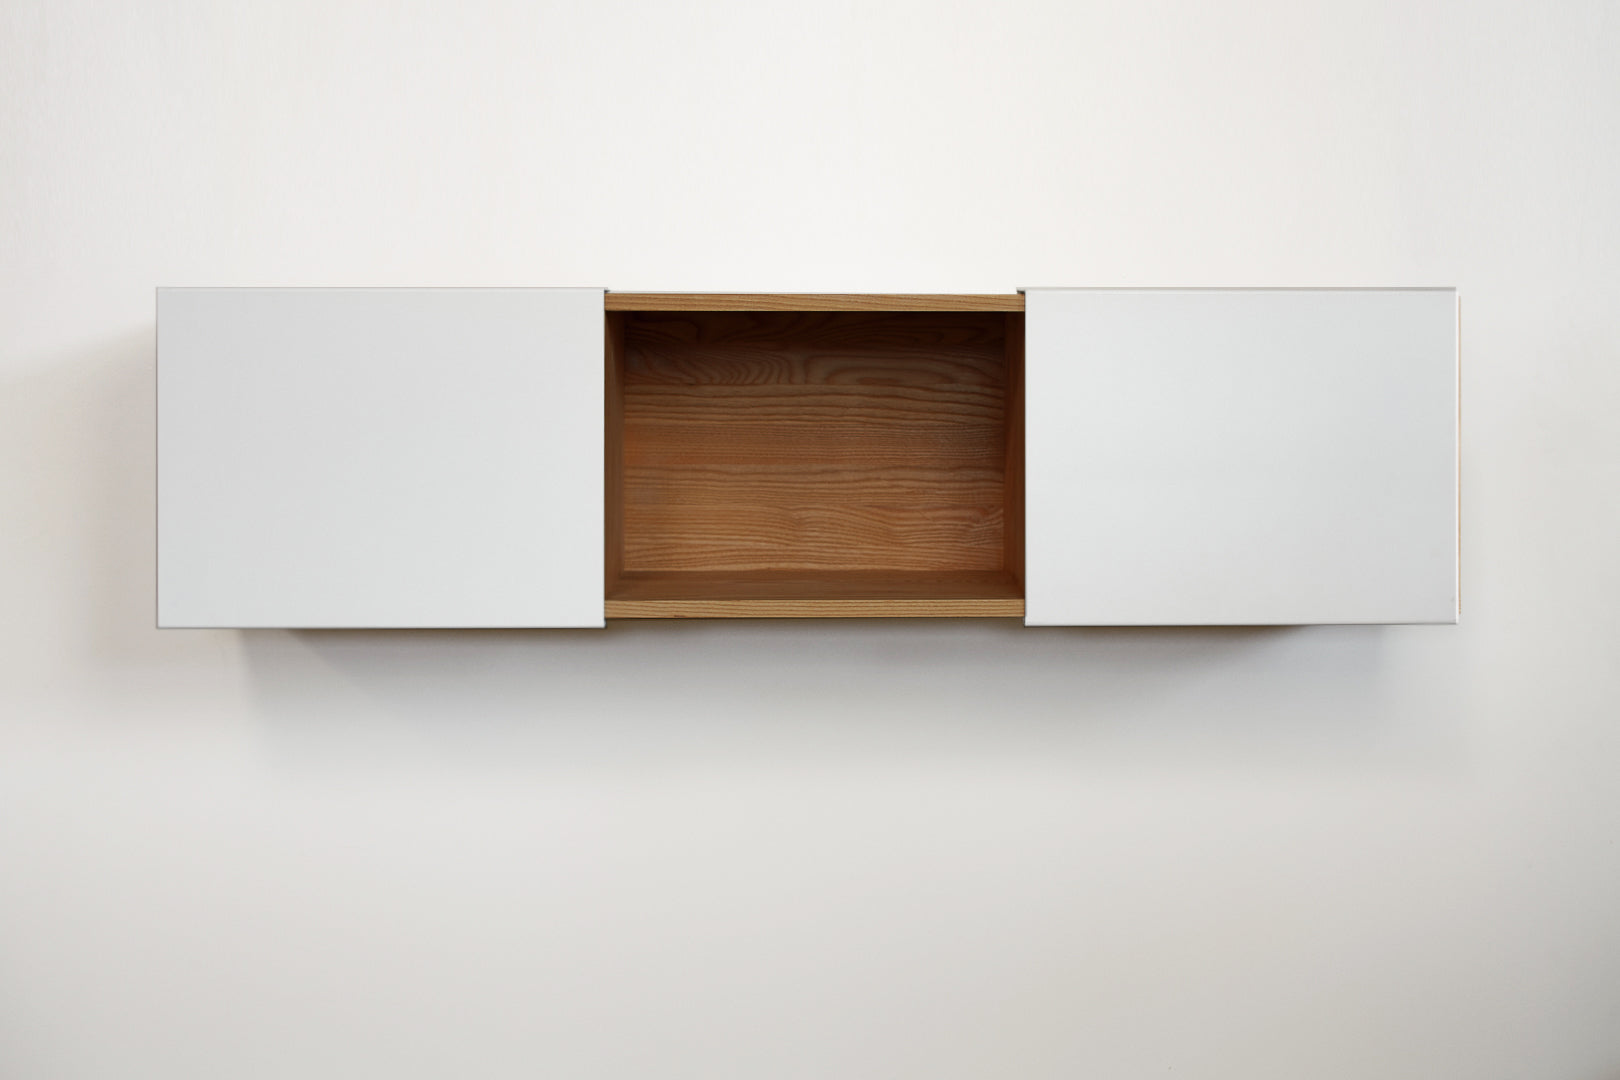 3X Universal Shelf- English Walnut, White Panels